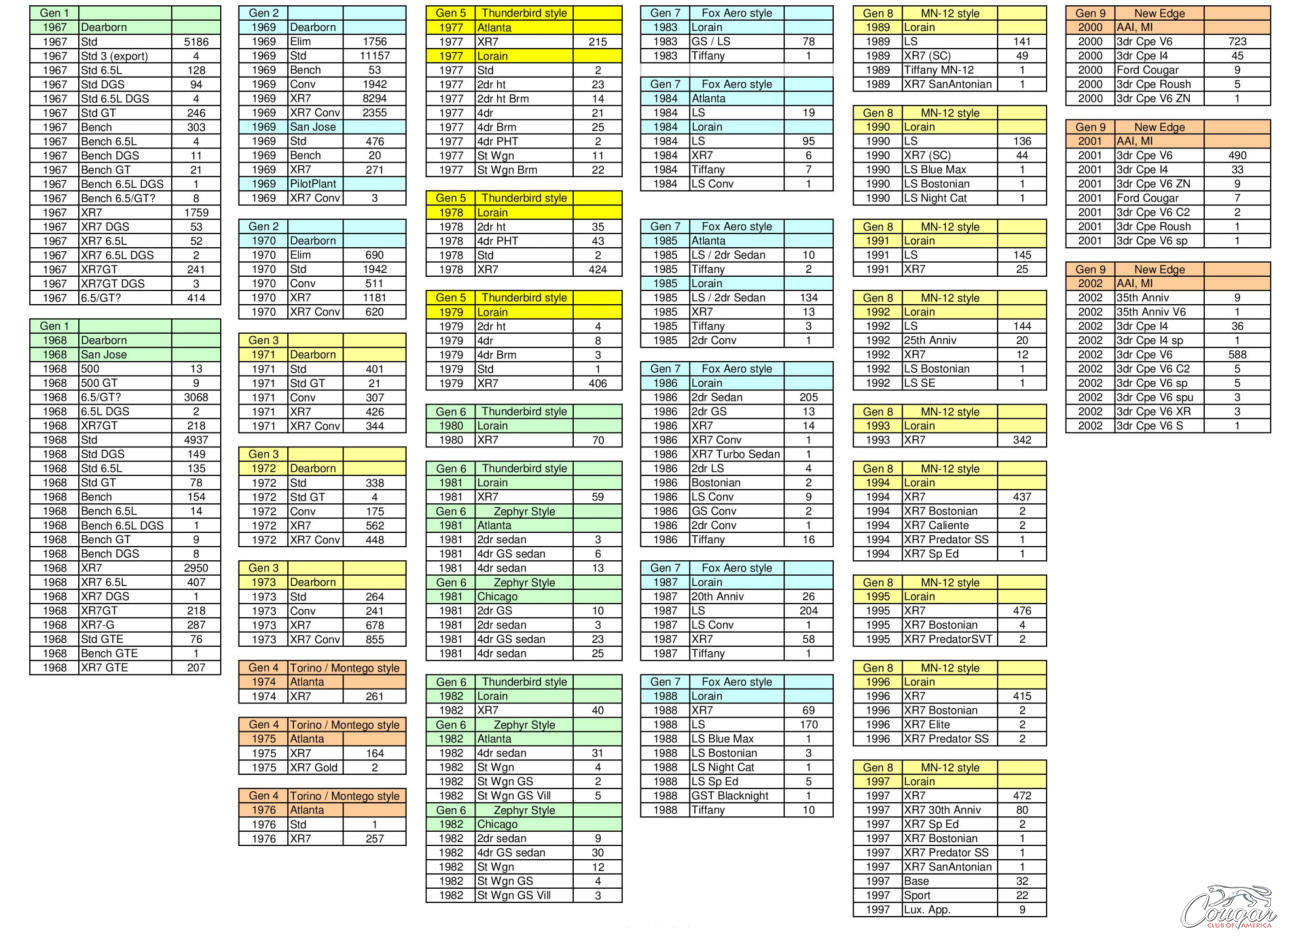 National Database Summary Spreadsheet